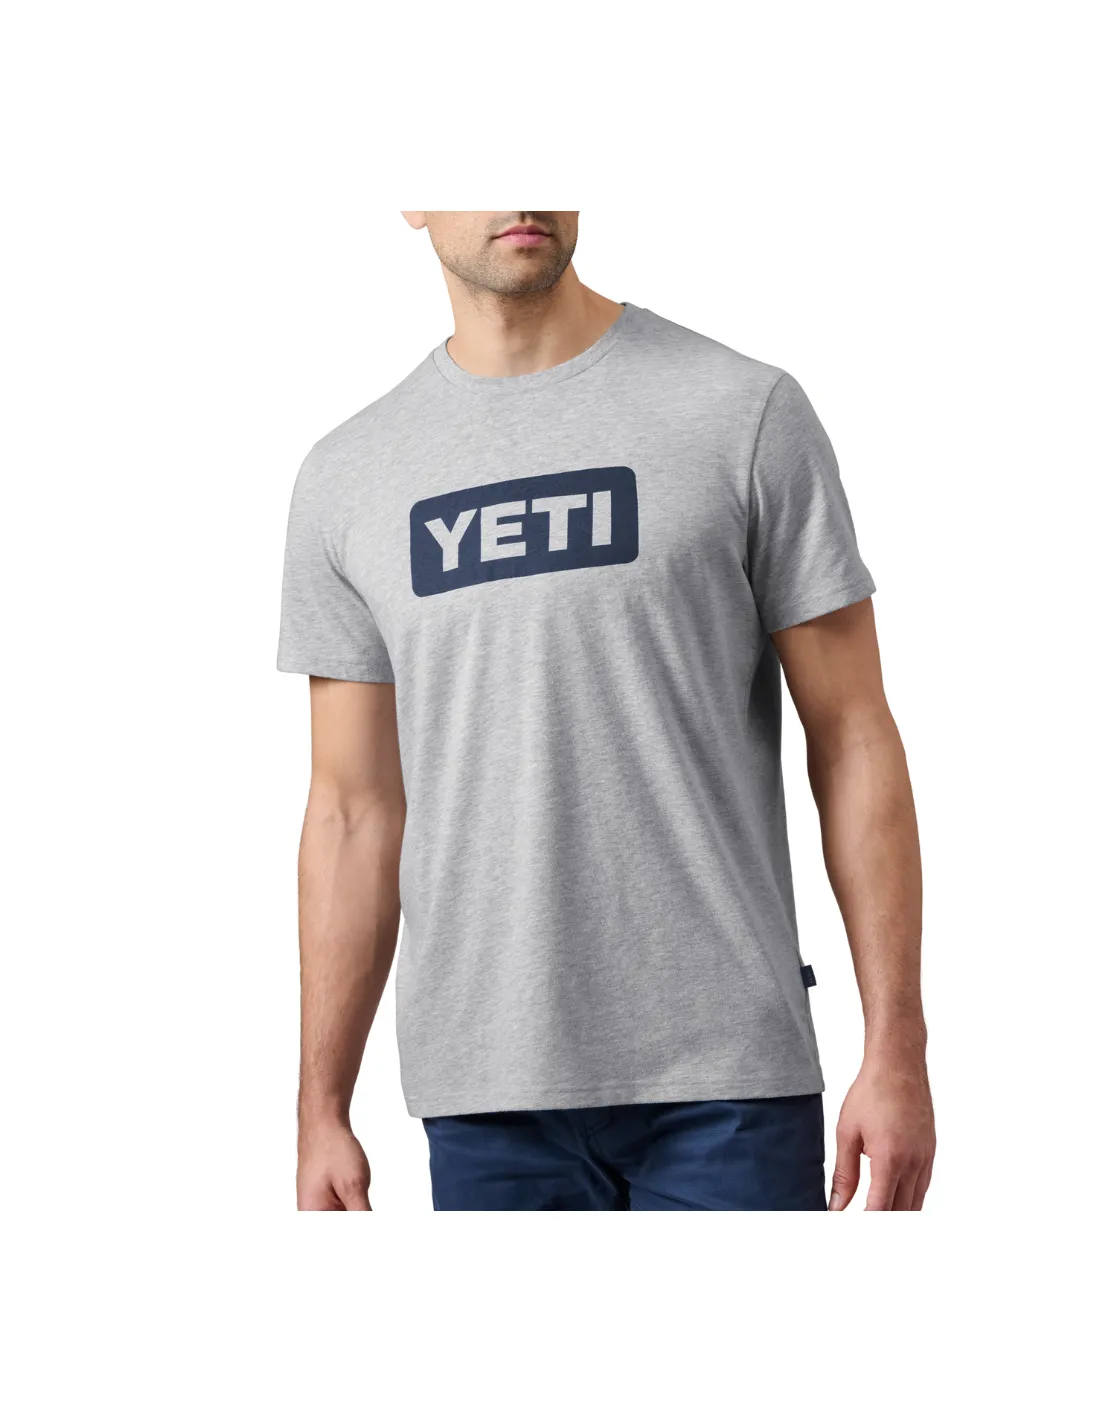 Yeti T-Shirt Short Sleeve Man grau/blau